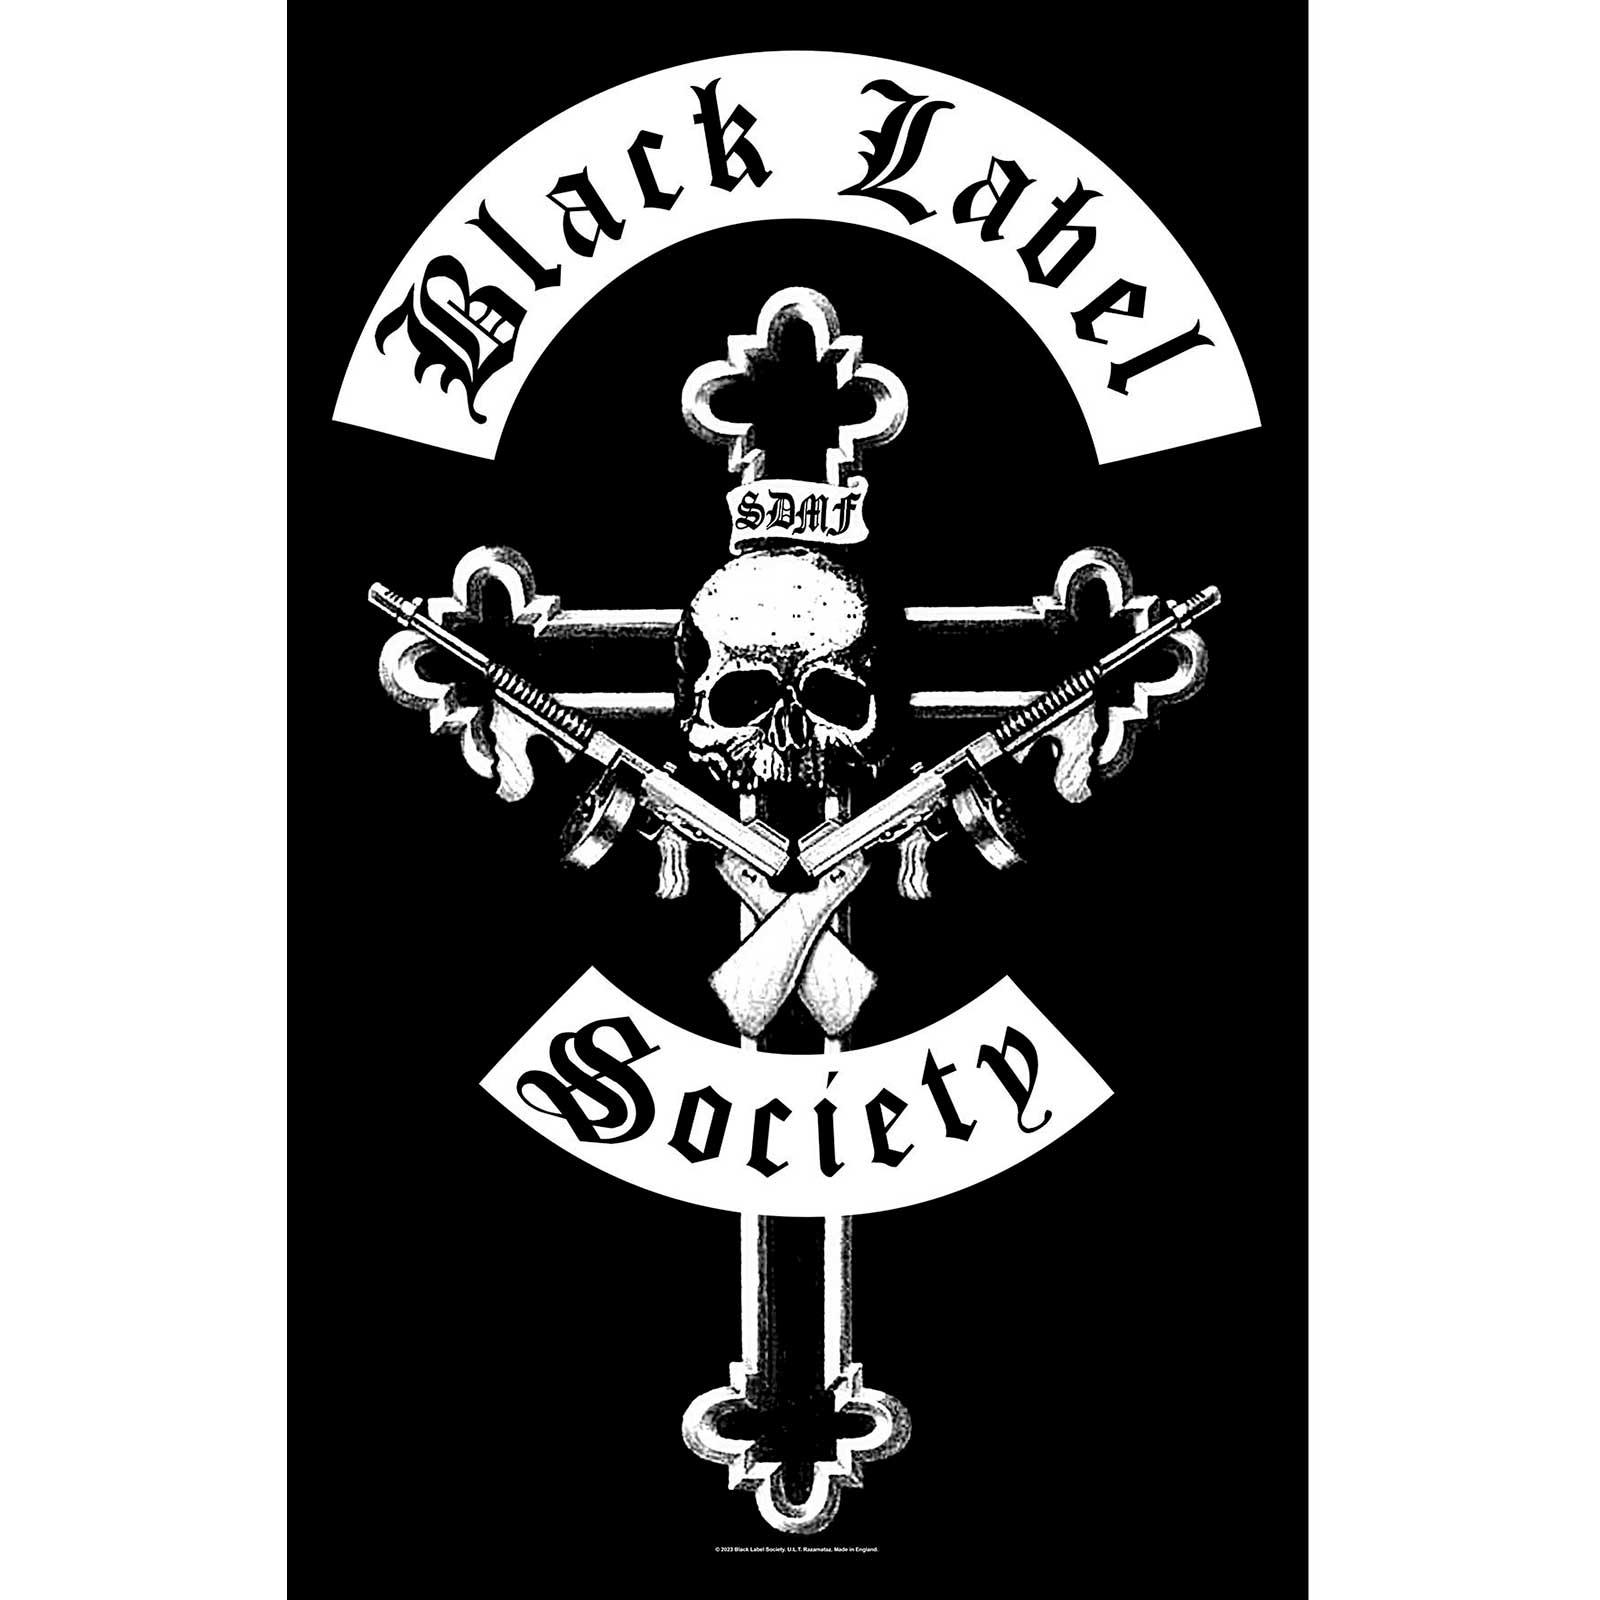 ブラック・レーベル・ソサイアティ Black Label Society オフィシャル商品 Mafia テキスタイルポスター 布製 ポスター 【海外通販】